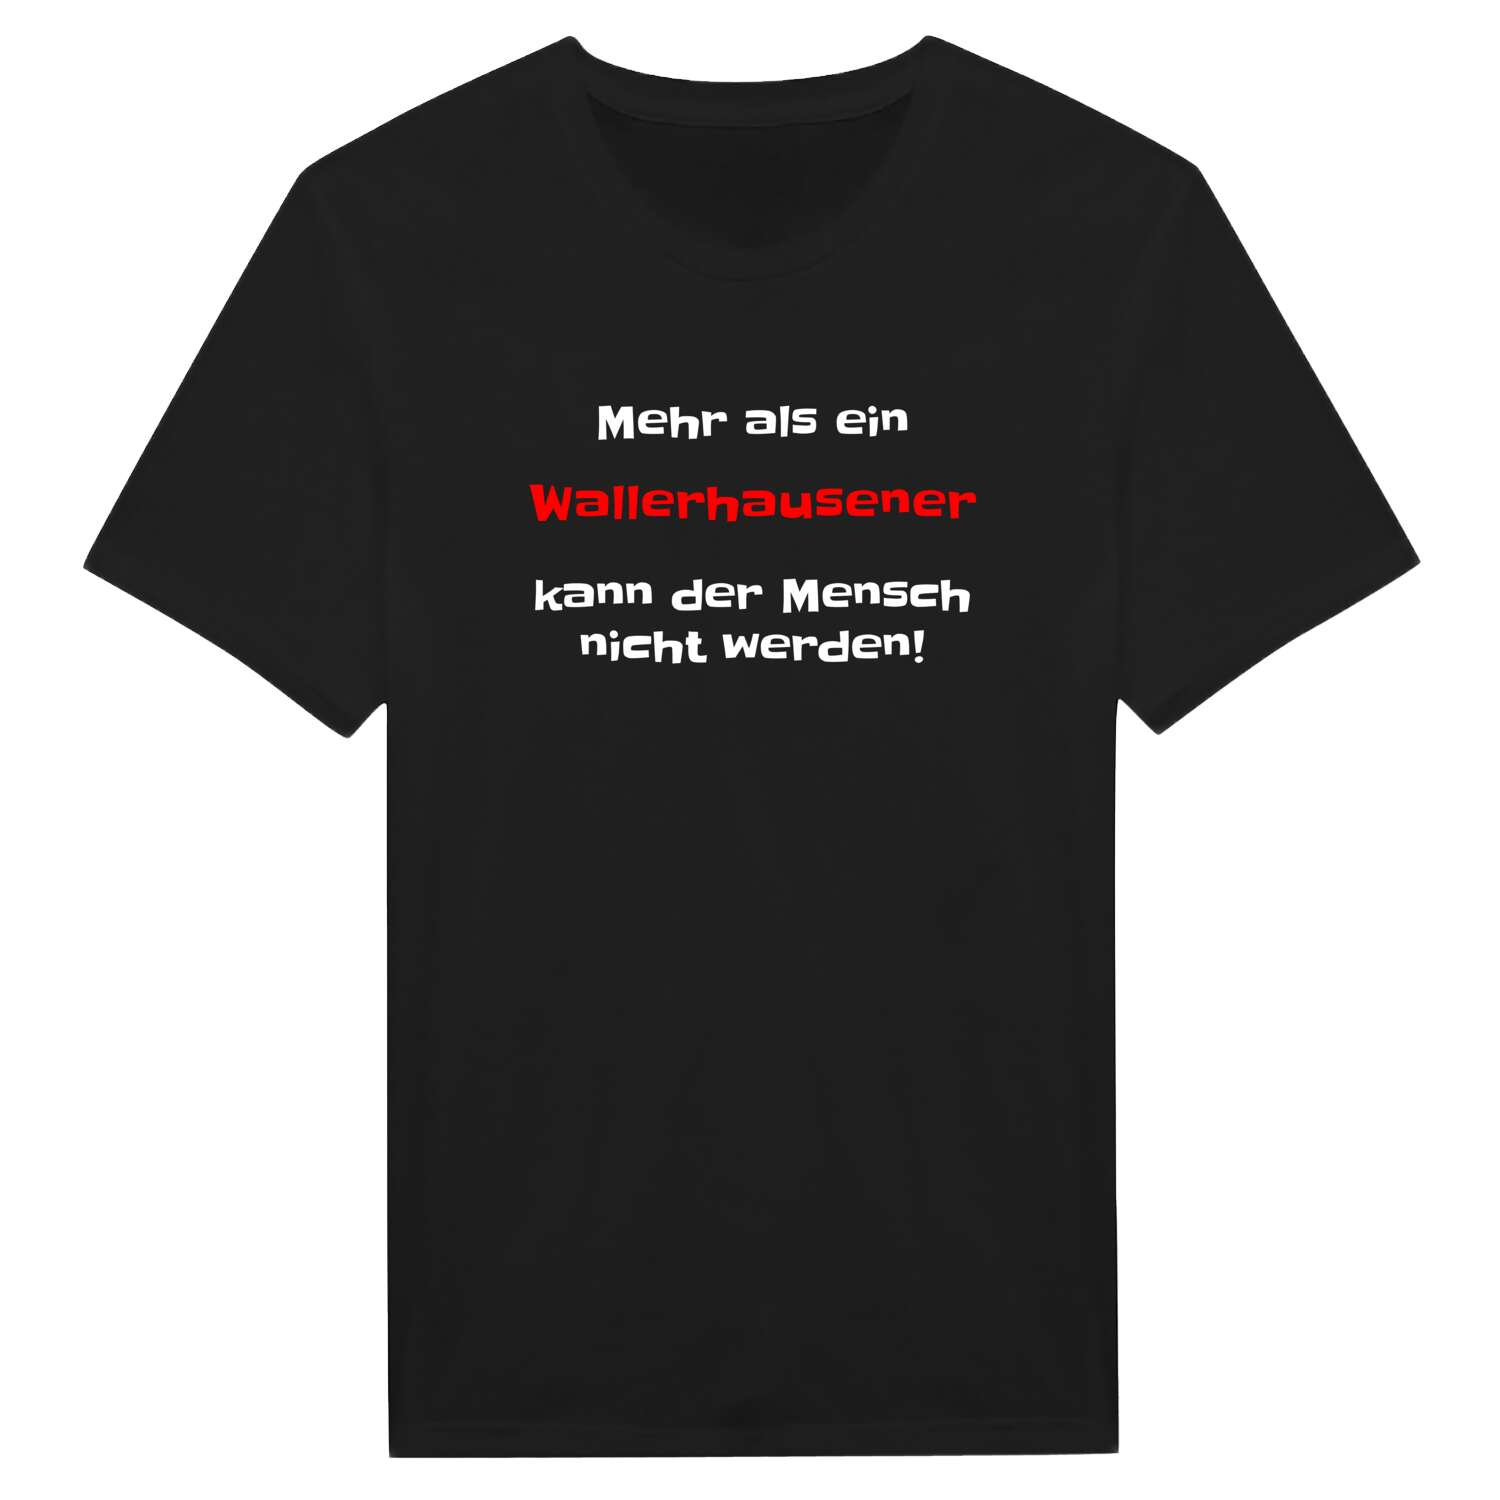 Wallerhausen T-Shirt »Mehr als ein«